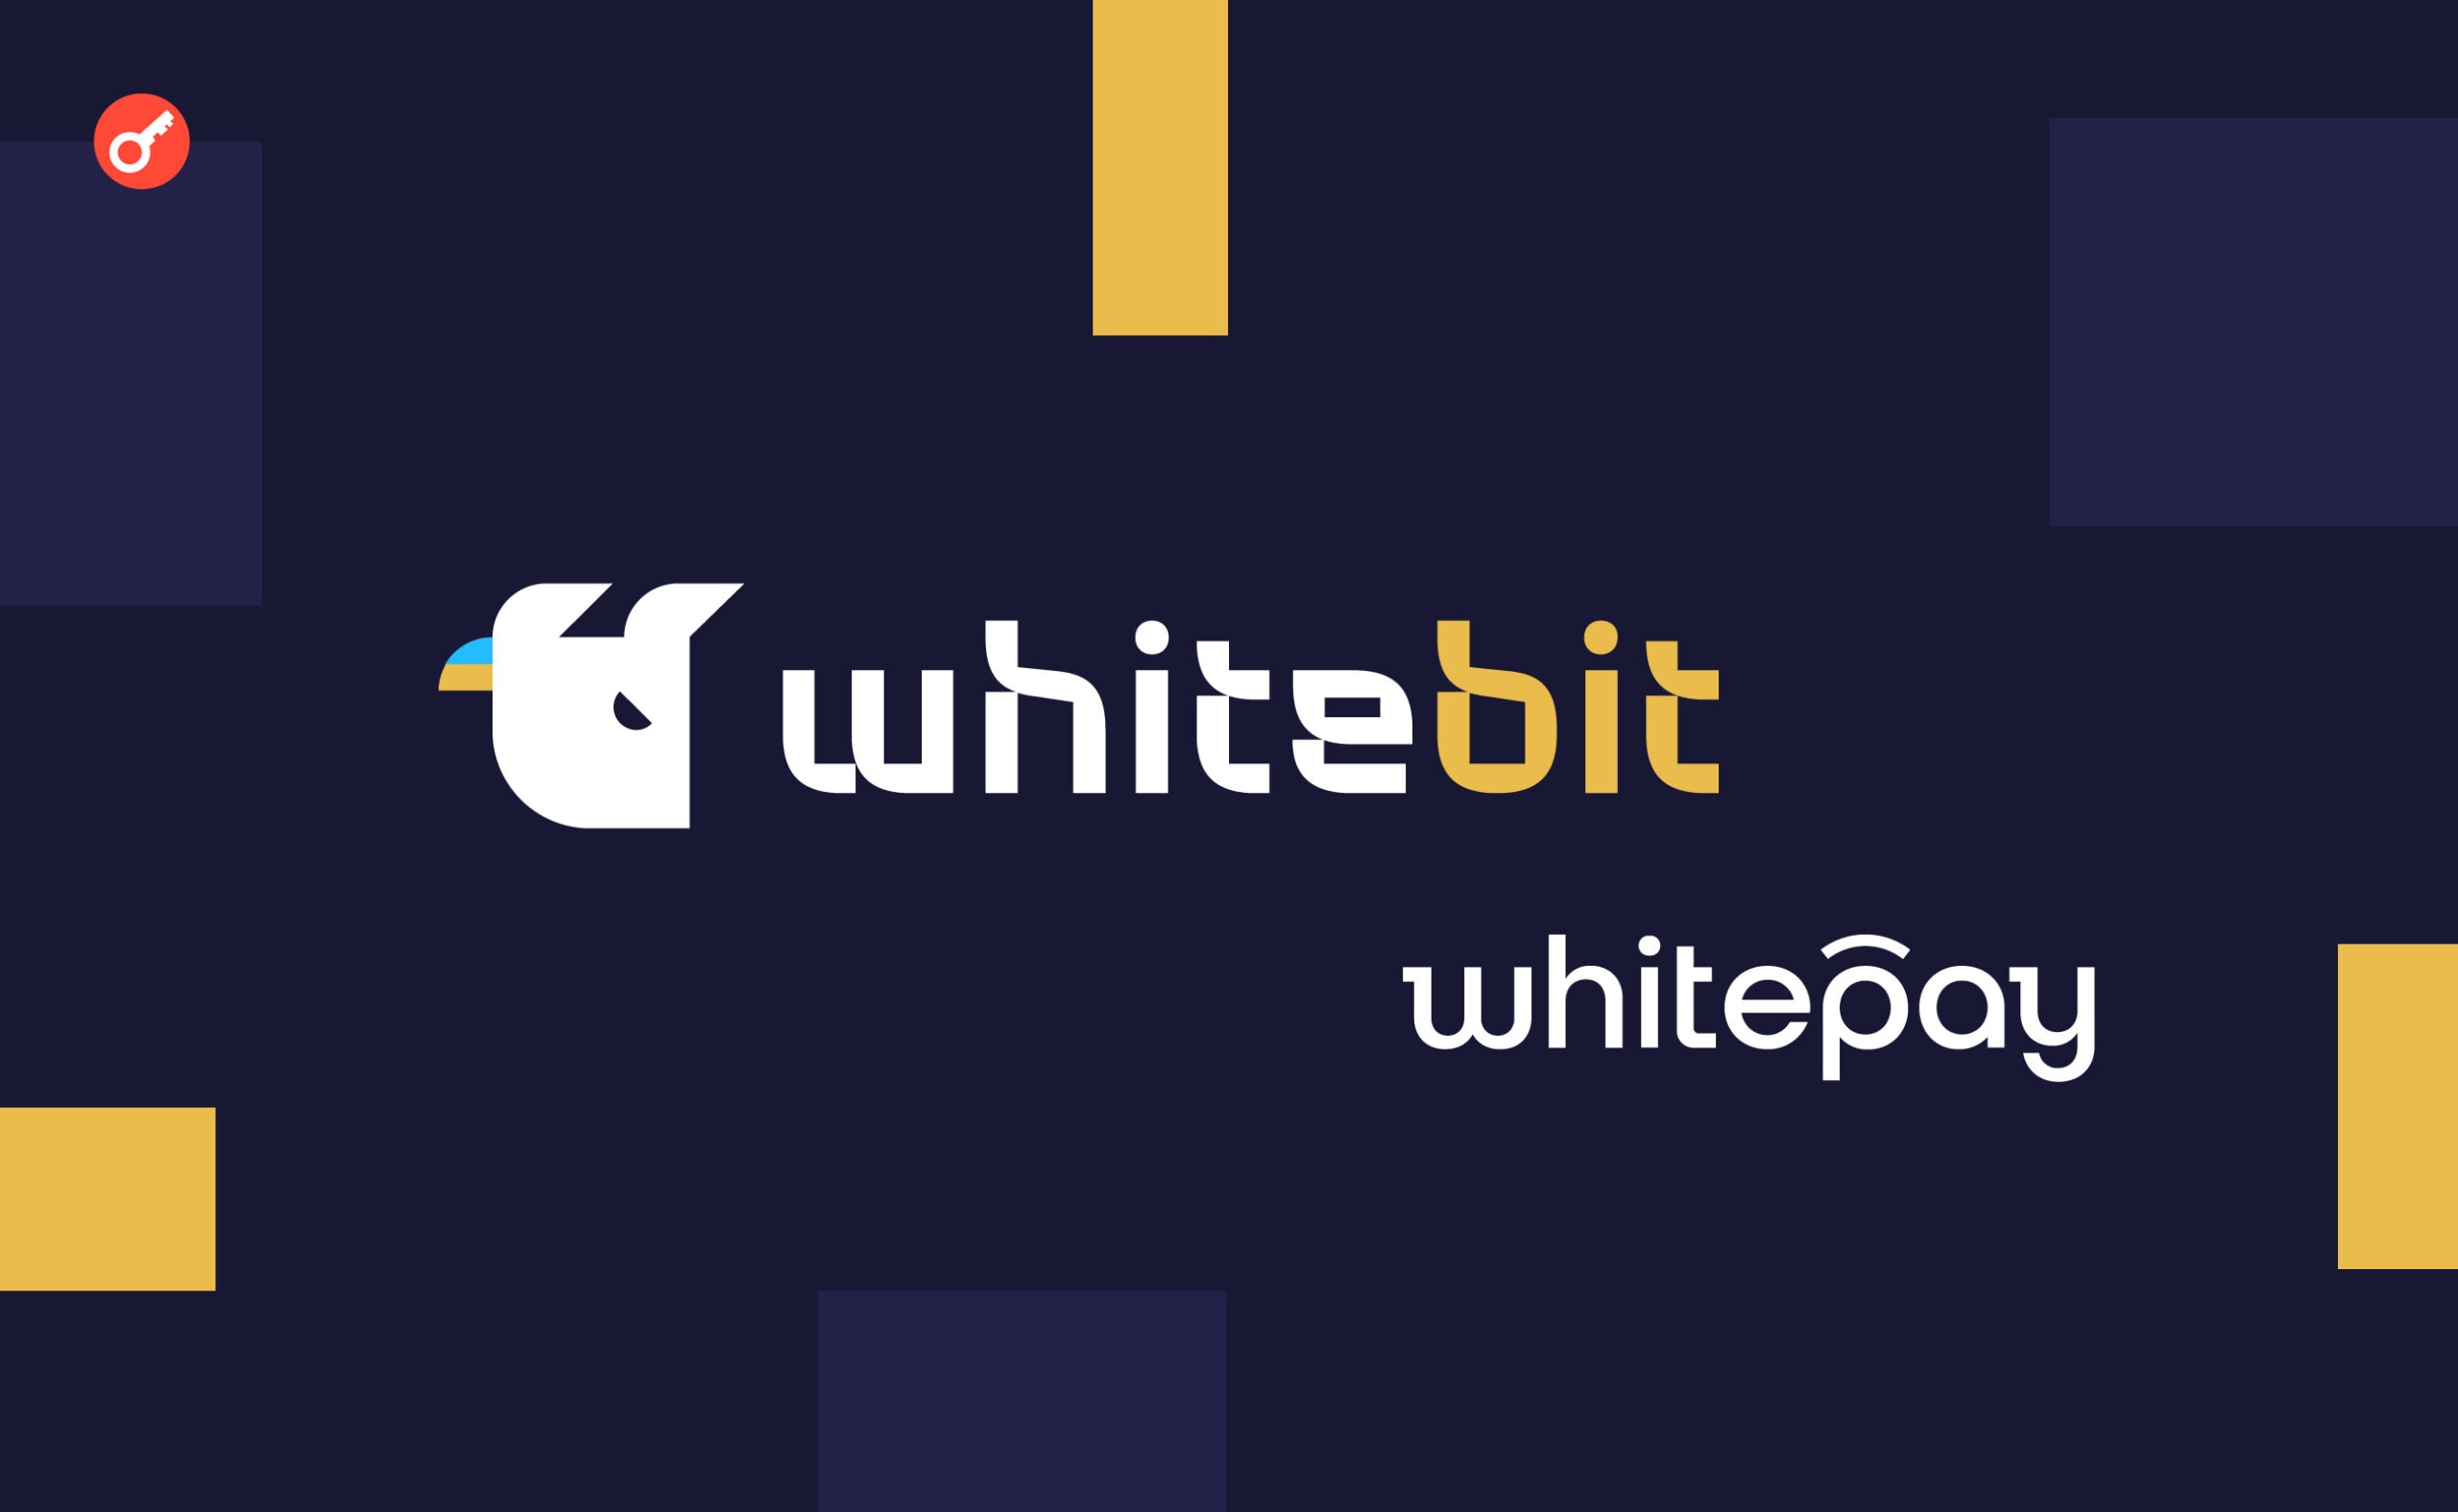 WhiteBIT и Whitepay стали партнерами Фонда Дом Рональда МакДональда в Украине. Заглавный коллаж новости.